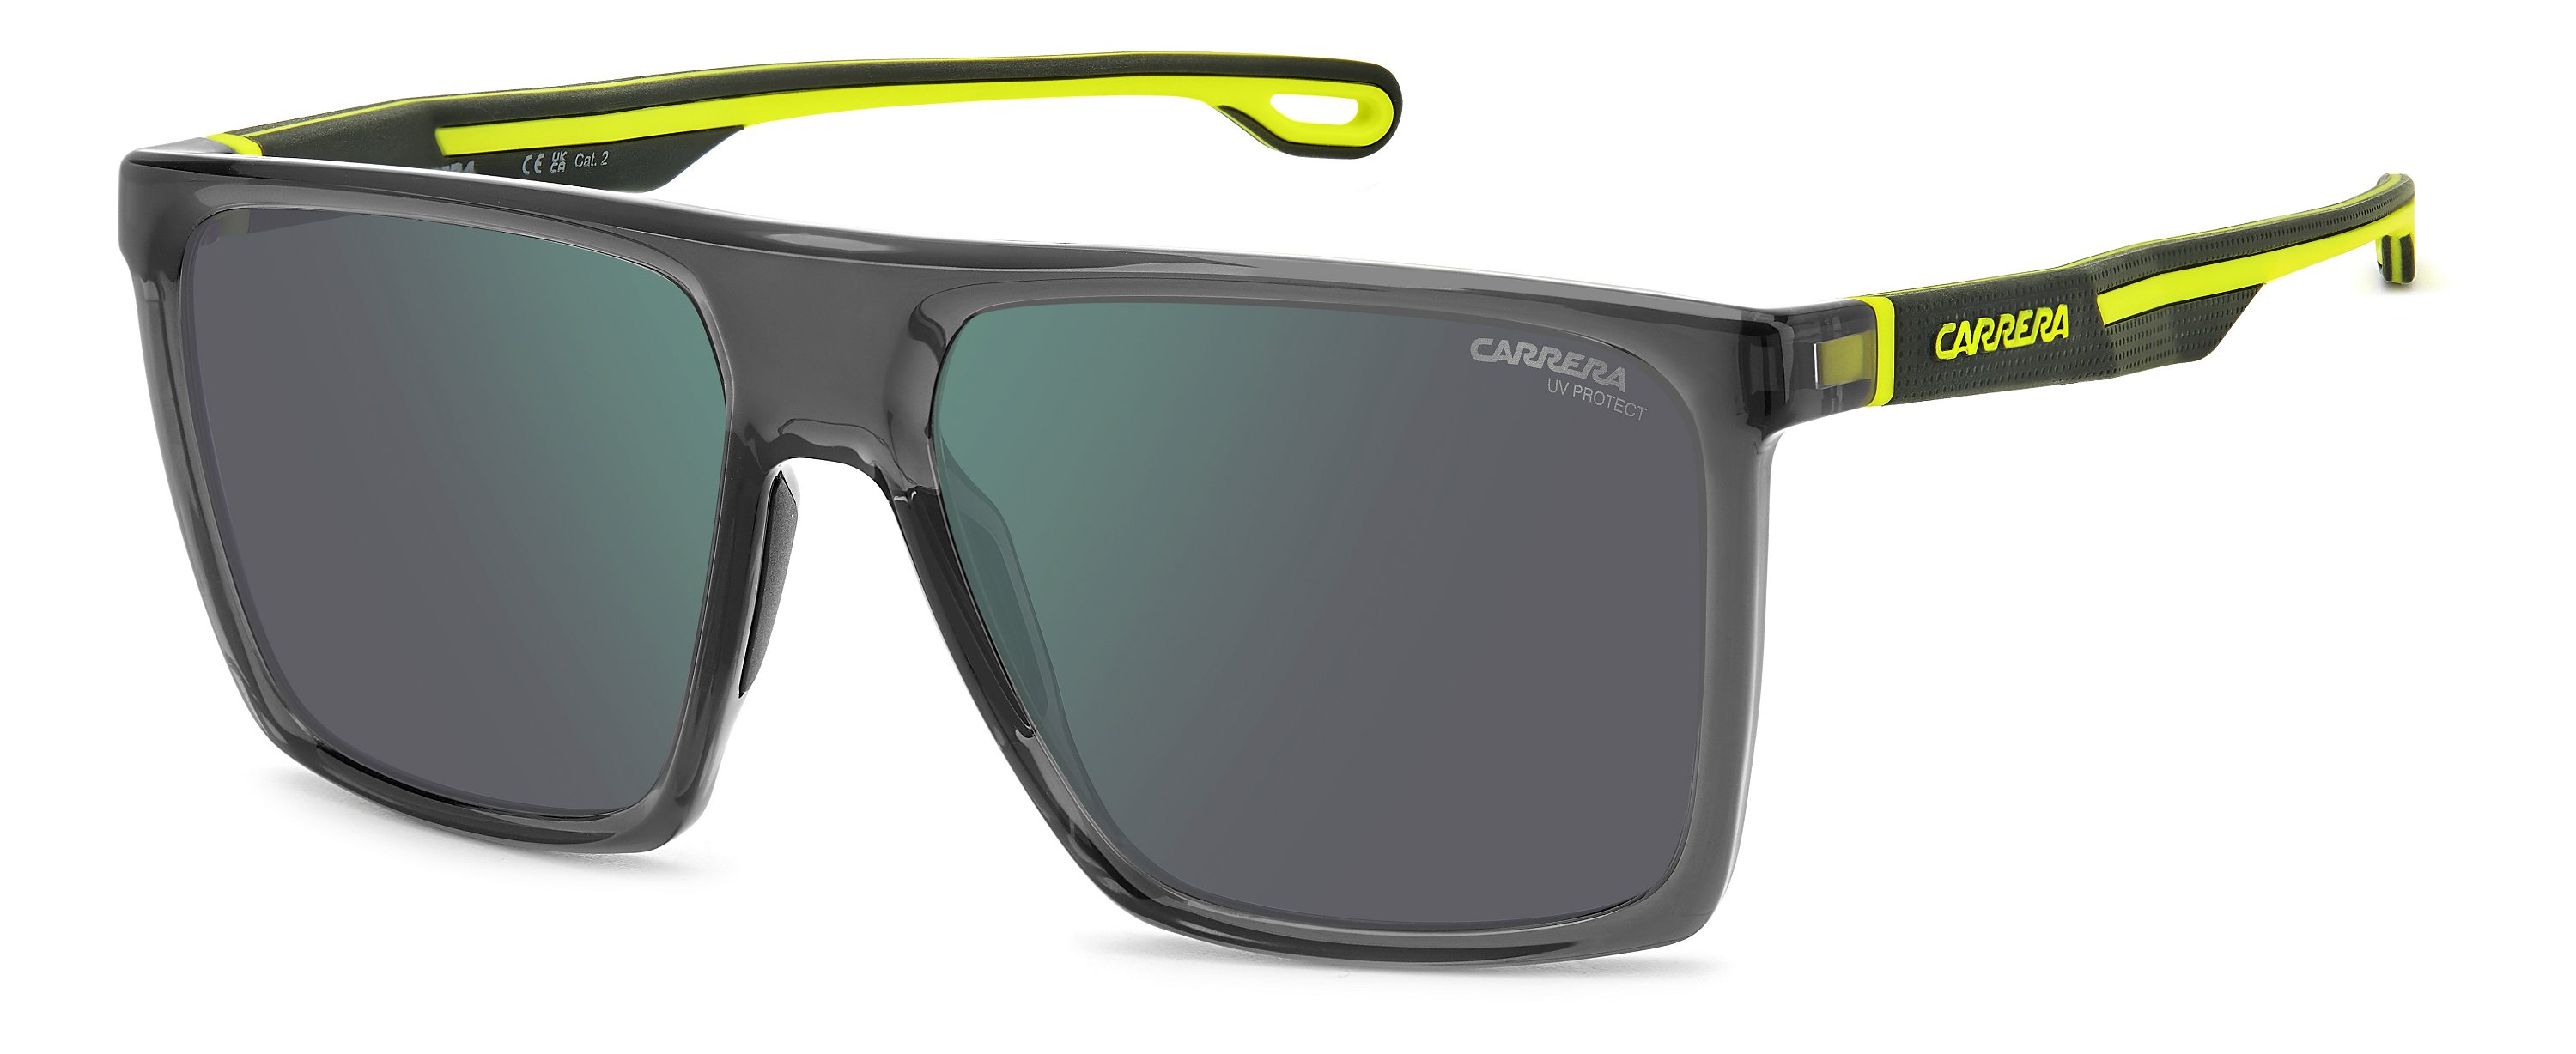 Das Bild zeigt die Sonnenbrille 4019_S 0UV von der Marke Carrera in  grau.